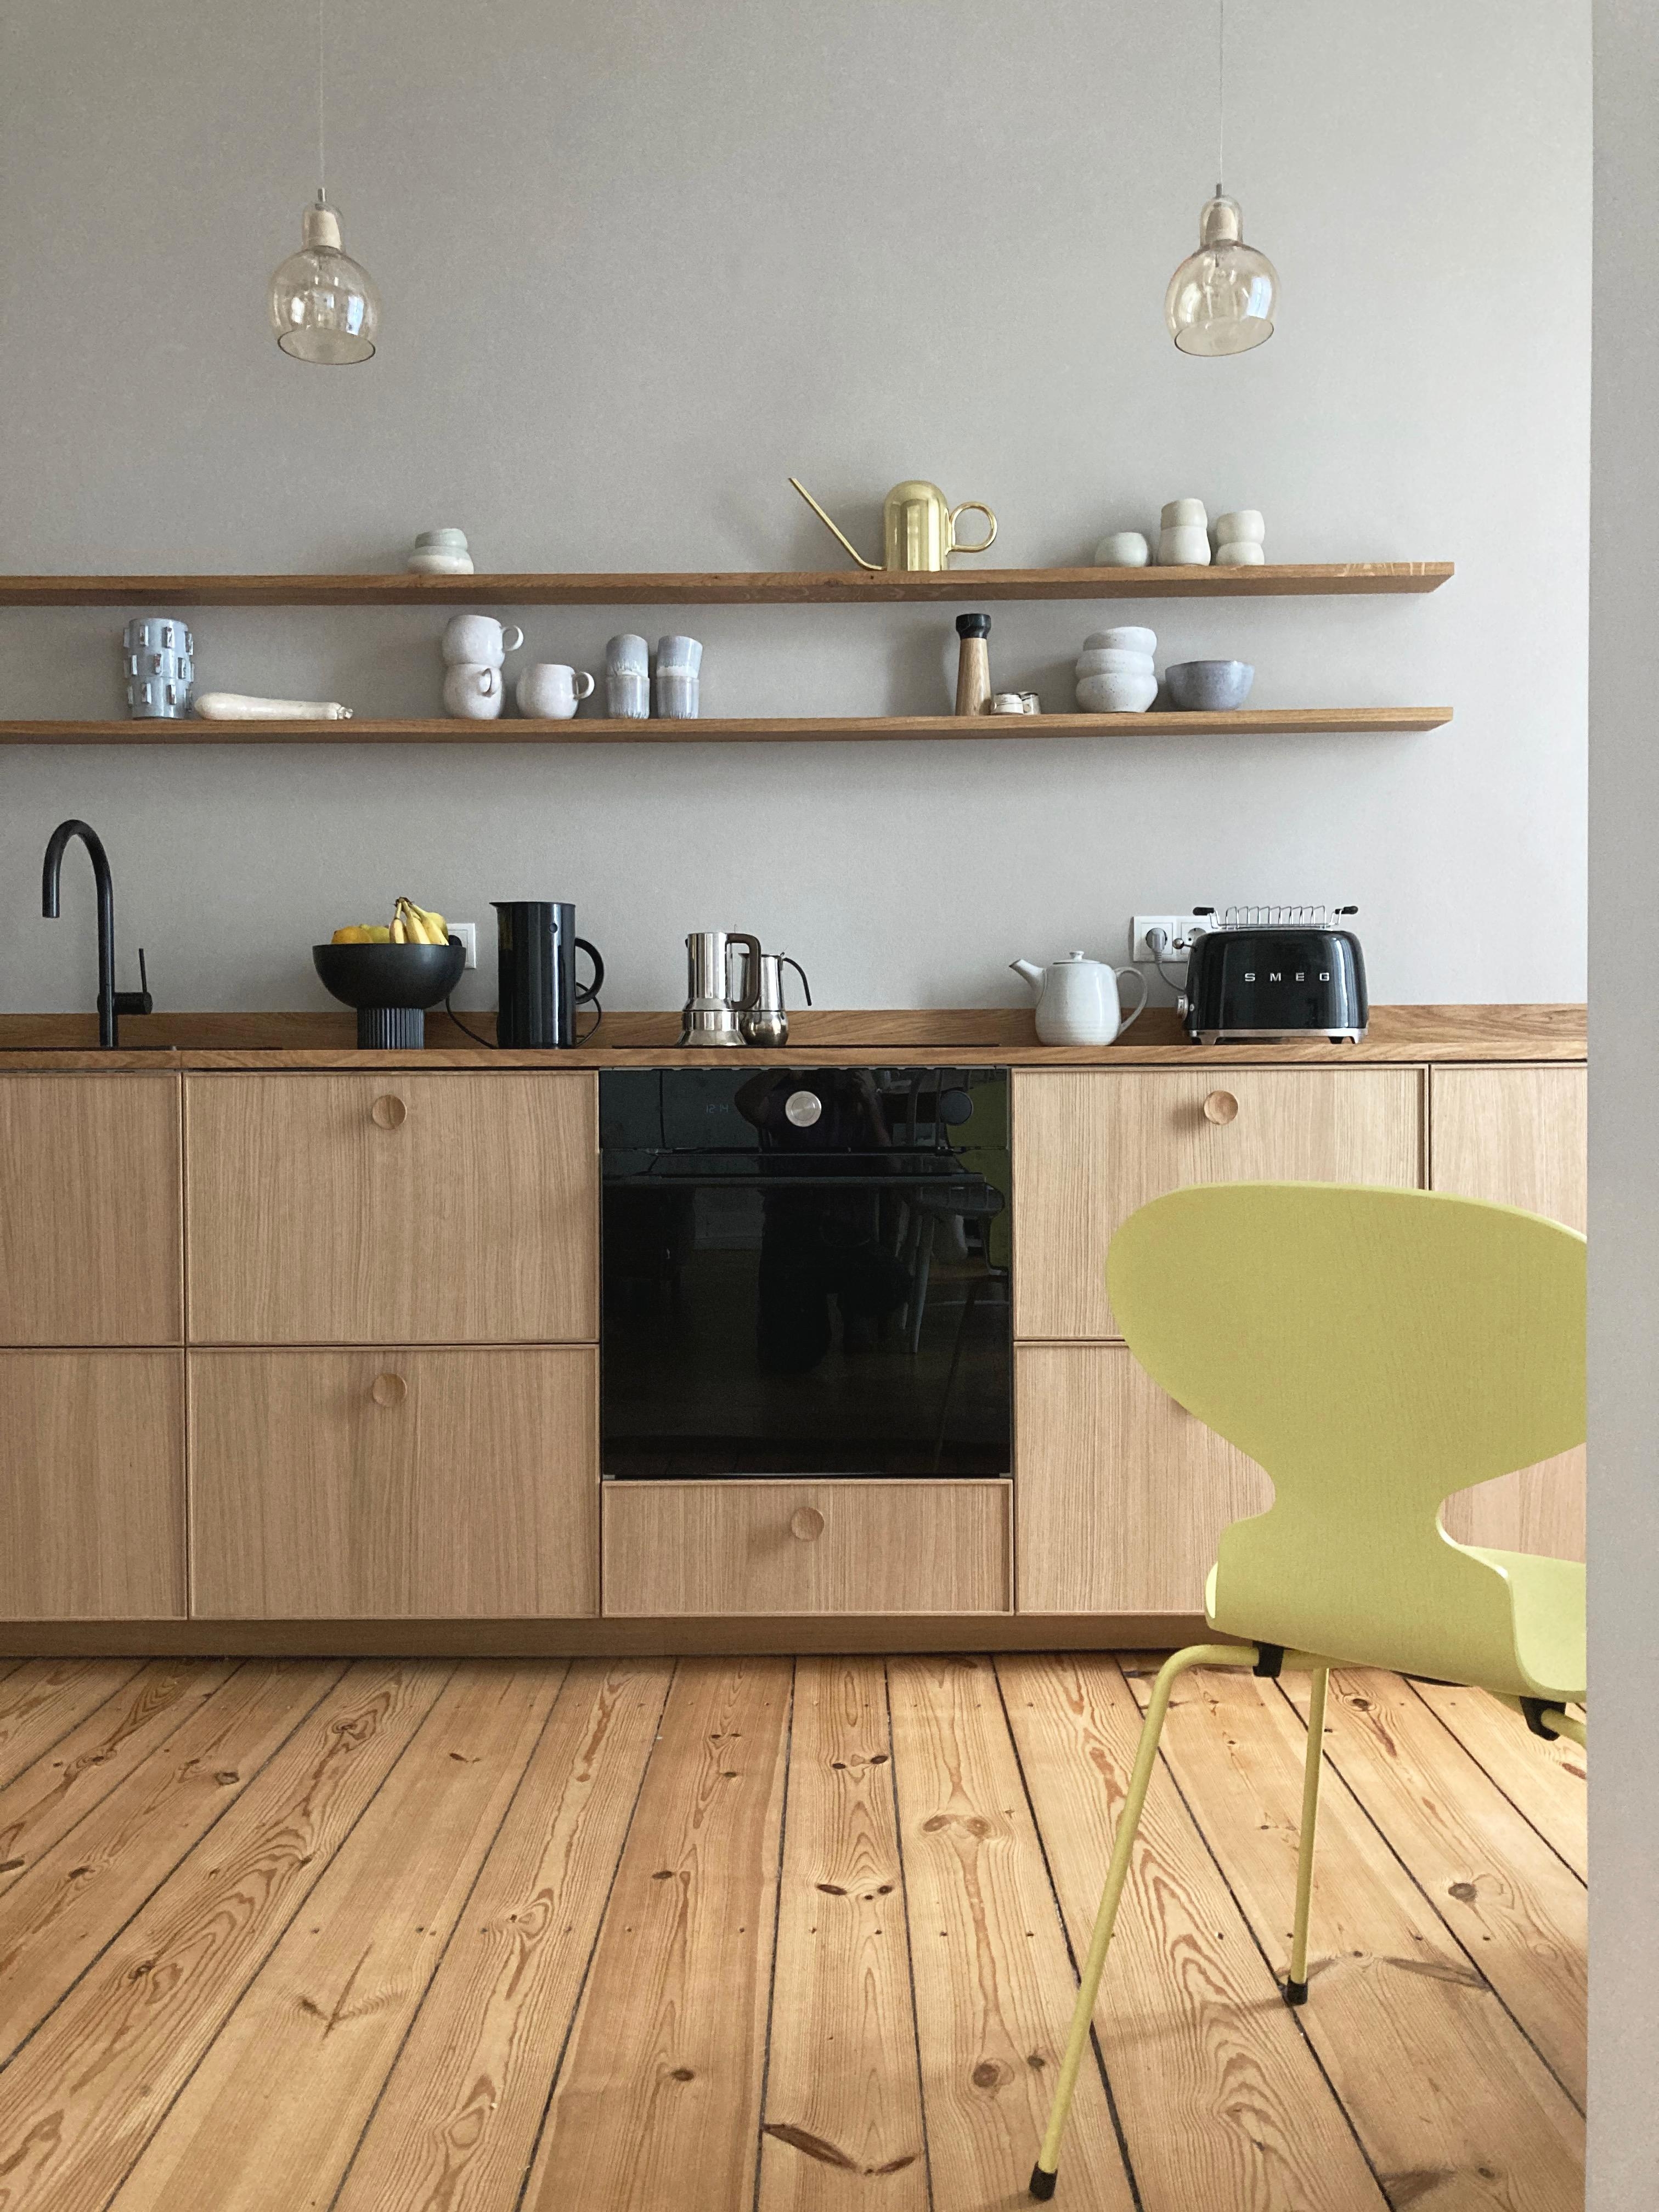 Mein neuer Lieblingsstuhl passend zur Farbe des Jahres #pantone2021 #kitchendesign #scandinaviandesign